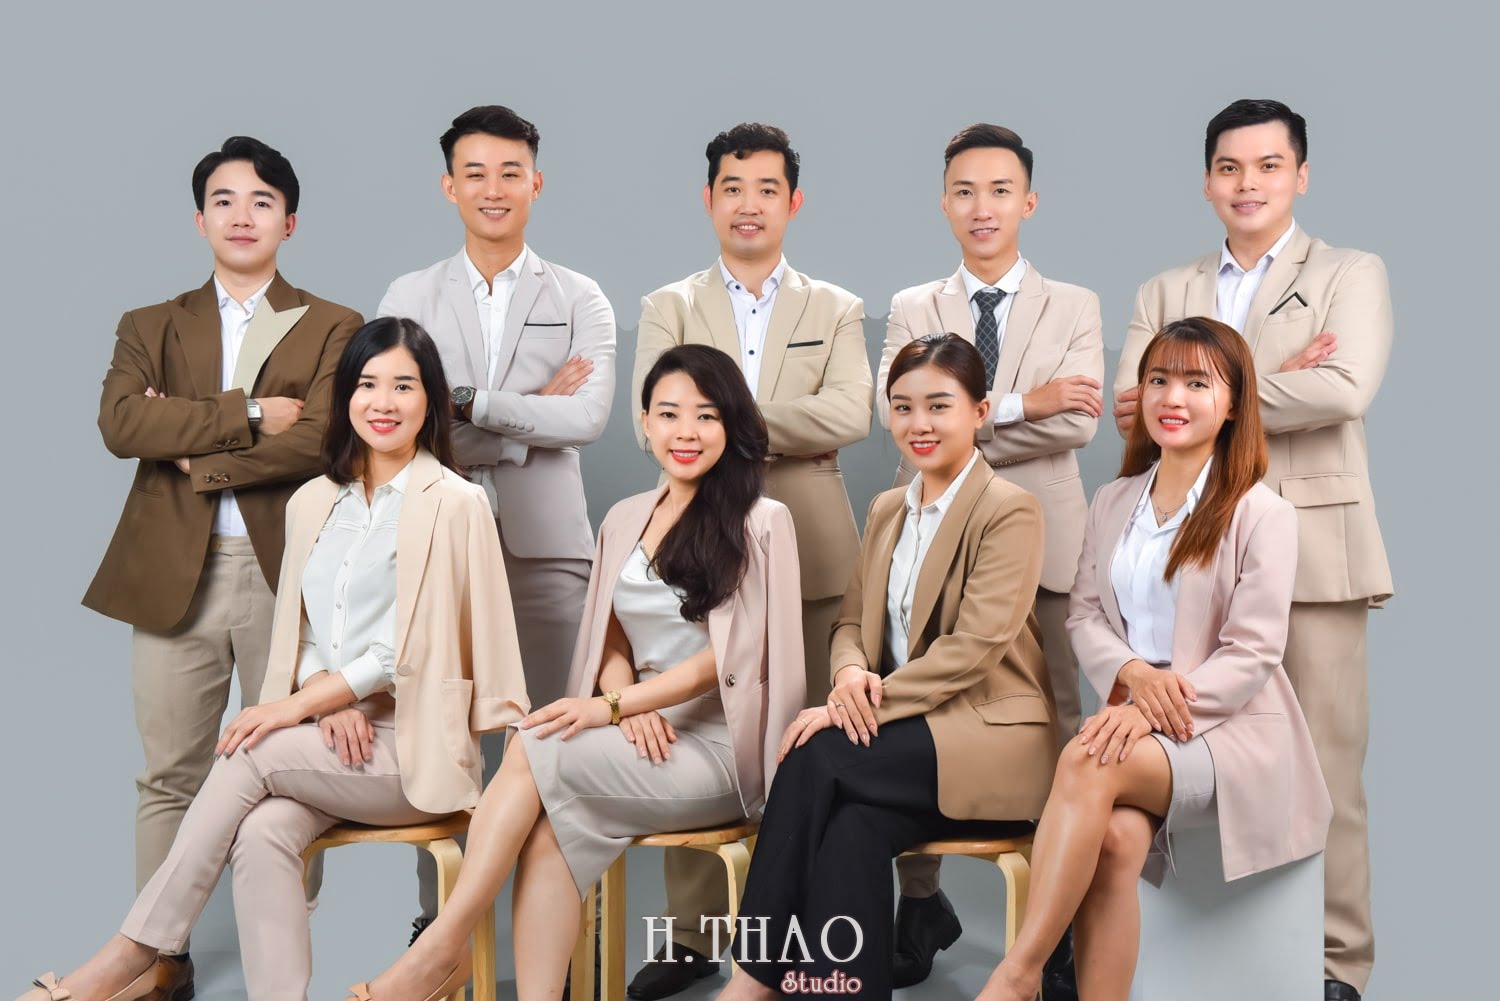 Anh 156 min - Chụp ảnh profile cho đội nhóm sale ngân hàng - HThao Studio